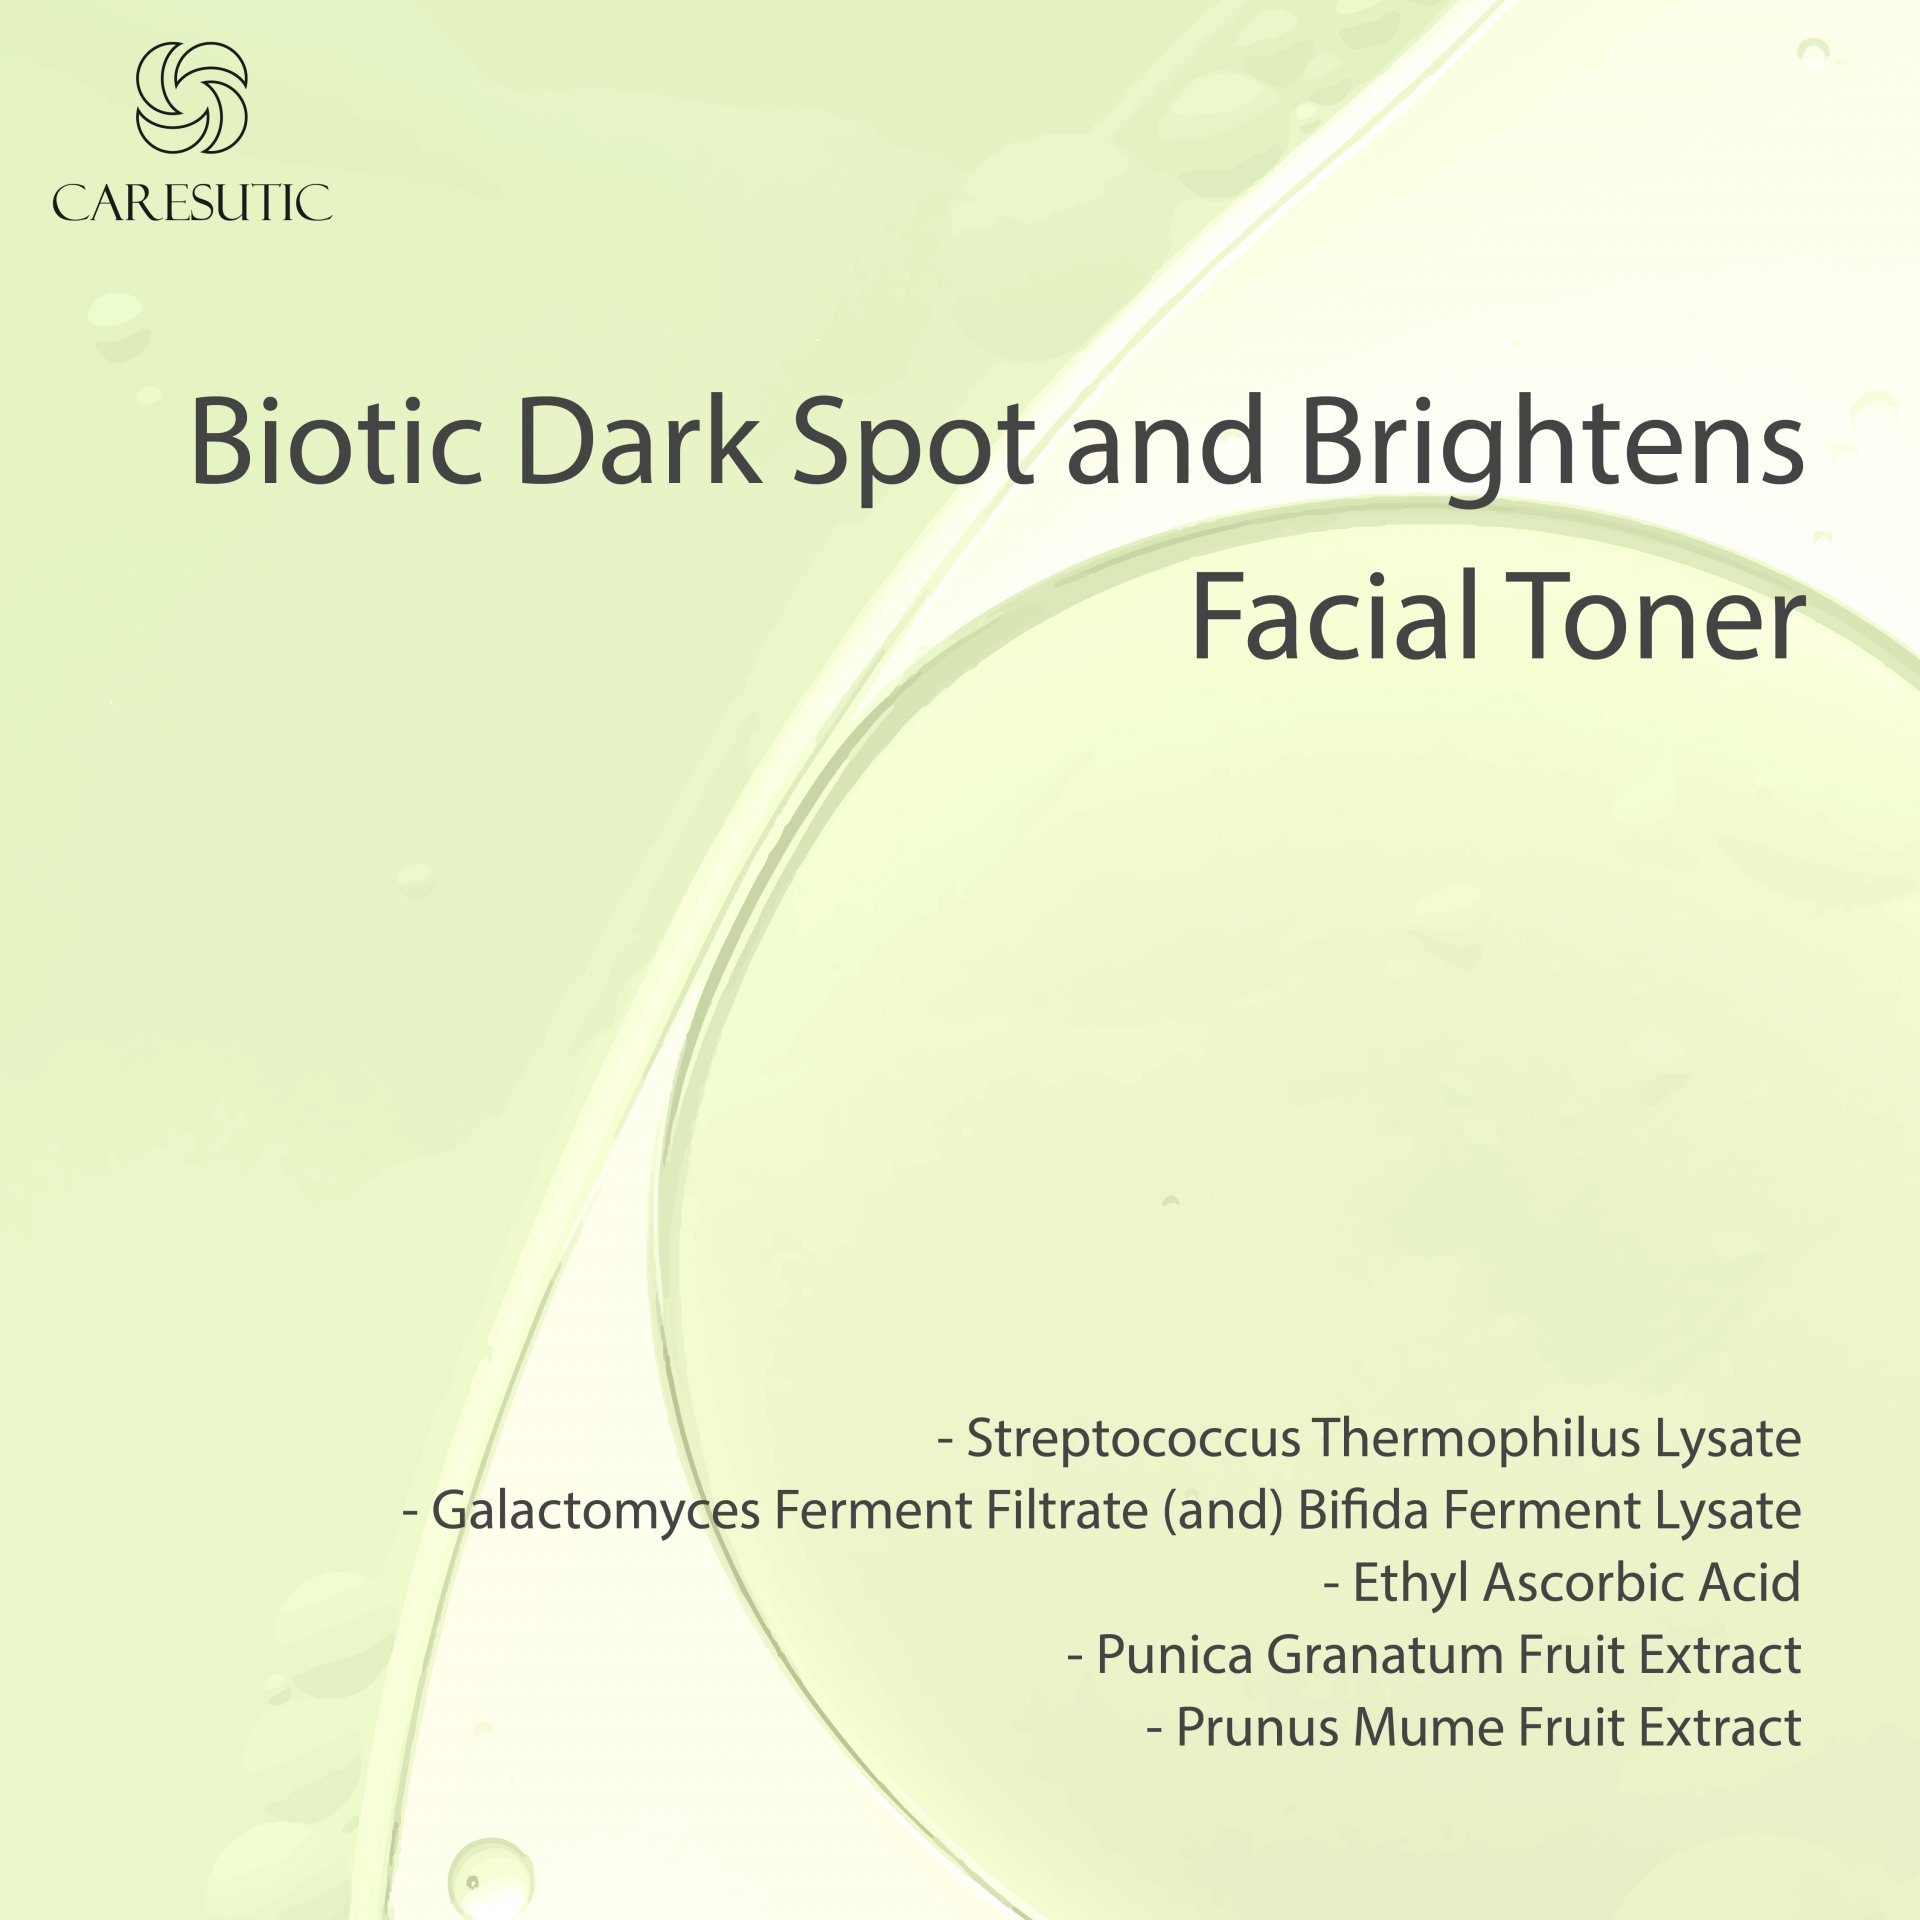 Biotic Dark Spot and Brightens Facial Toner